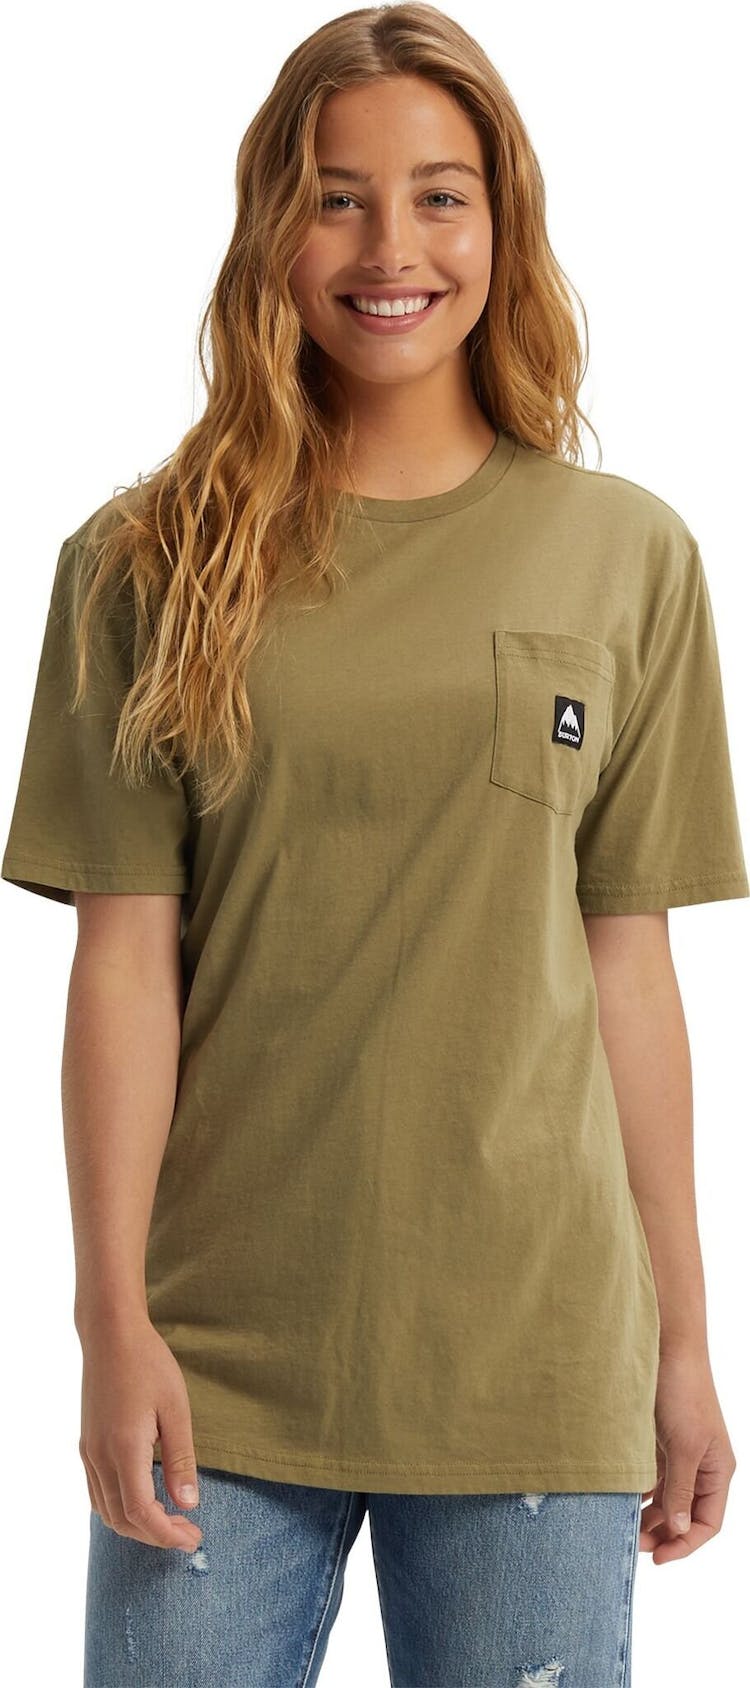 Numéro de l'image de la galerie de produits 4 pour le produit T-shirt à manches courtes Colfax - Unisexe